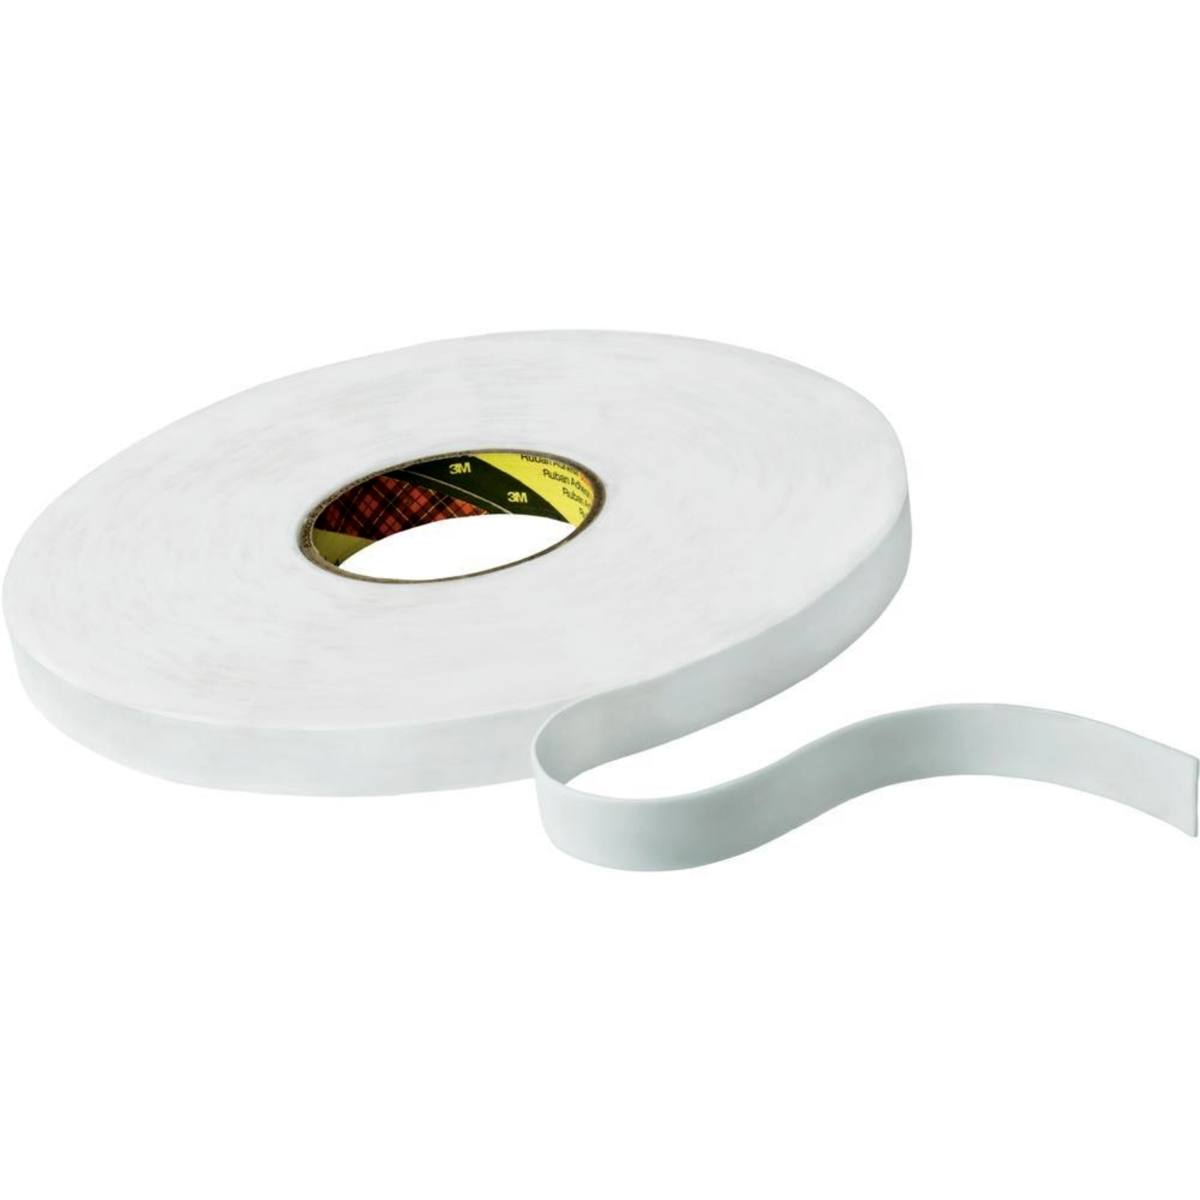 Nastro adesivo 3M in schiuma PE con adesivo in gomma-resina 9528, bianco, 12 mm x 66 m, 0,8 mm